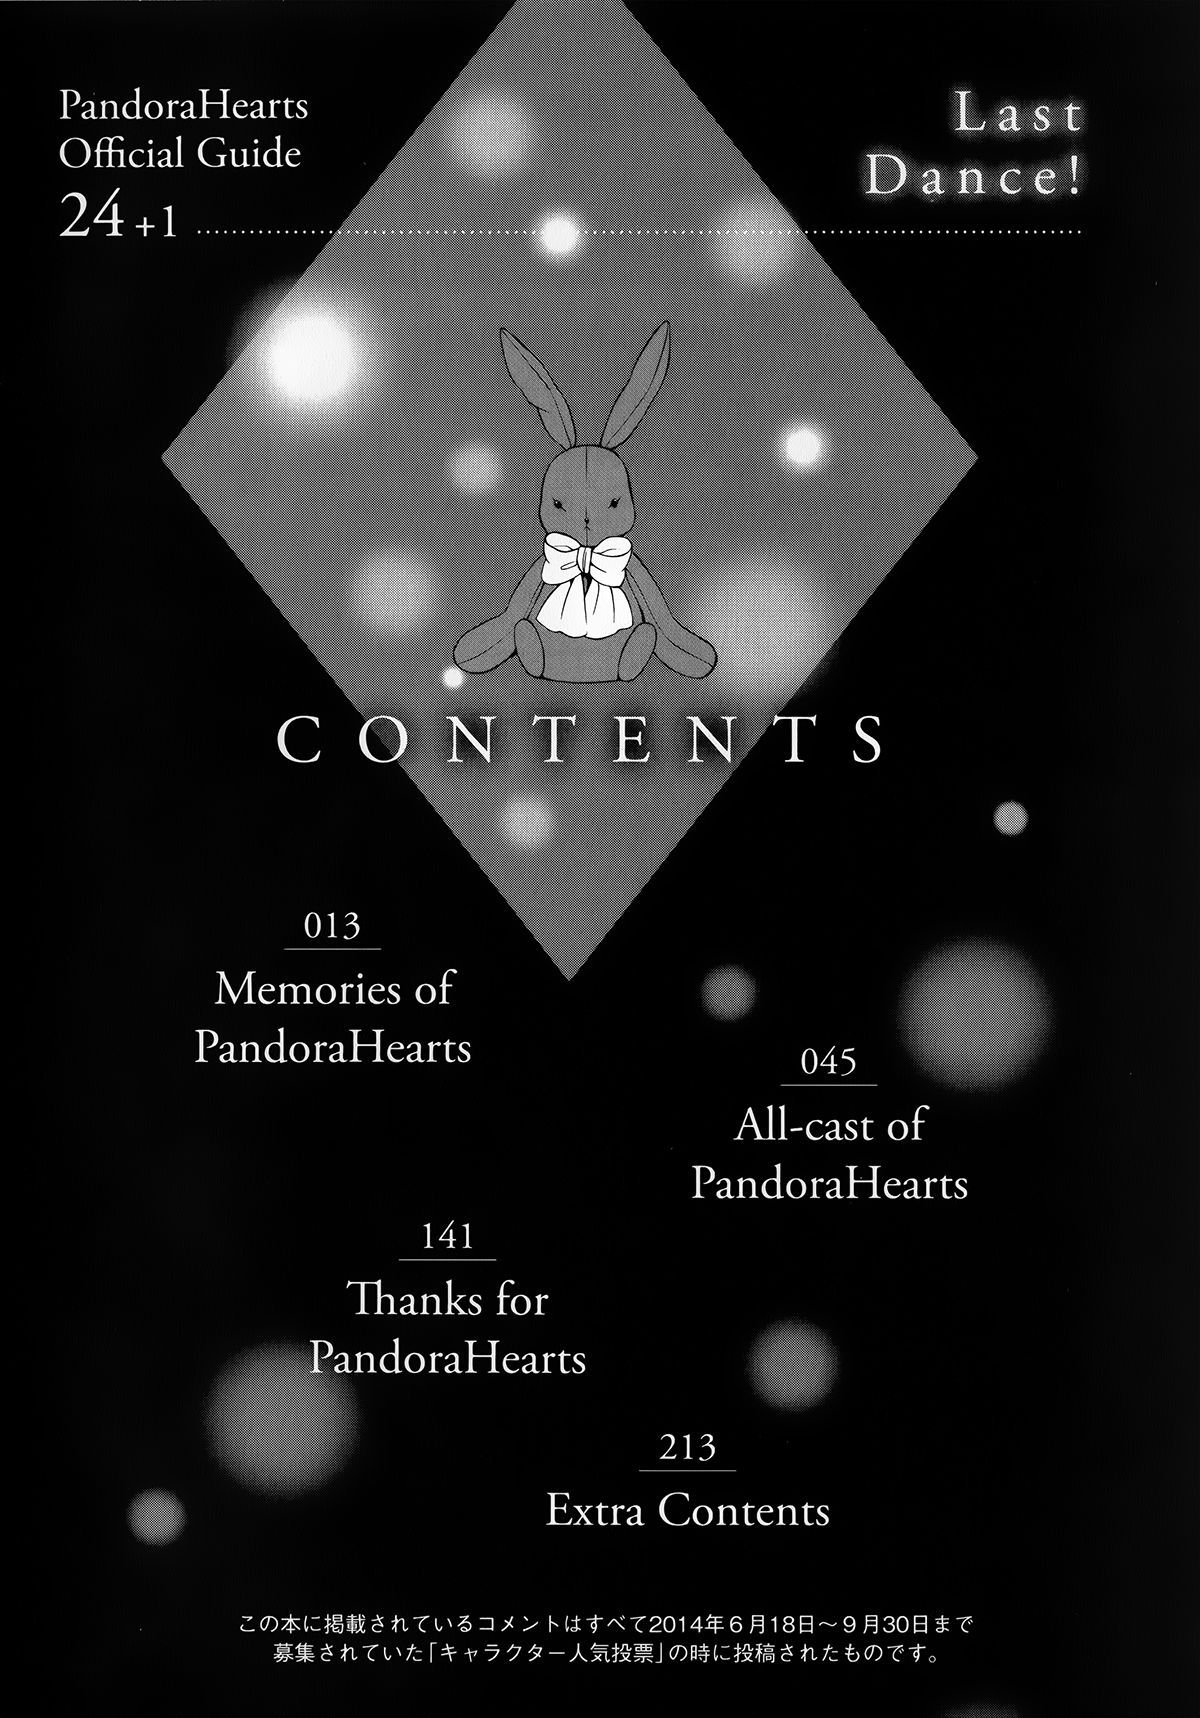 Pandora Hearts Guidebook 24+1: Last Dance パンドラハーツ オフィシャルガイド 24 + 1 ~Last Dance! 47